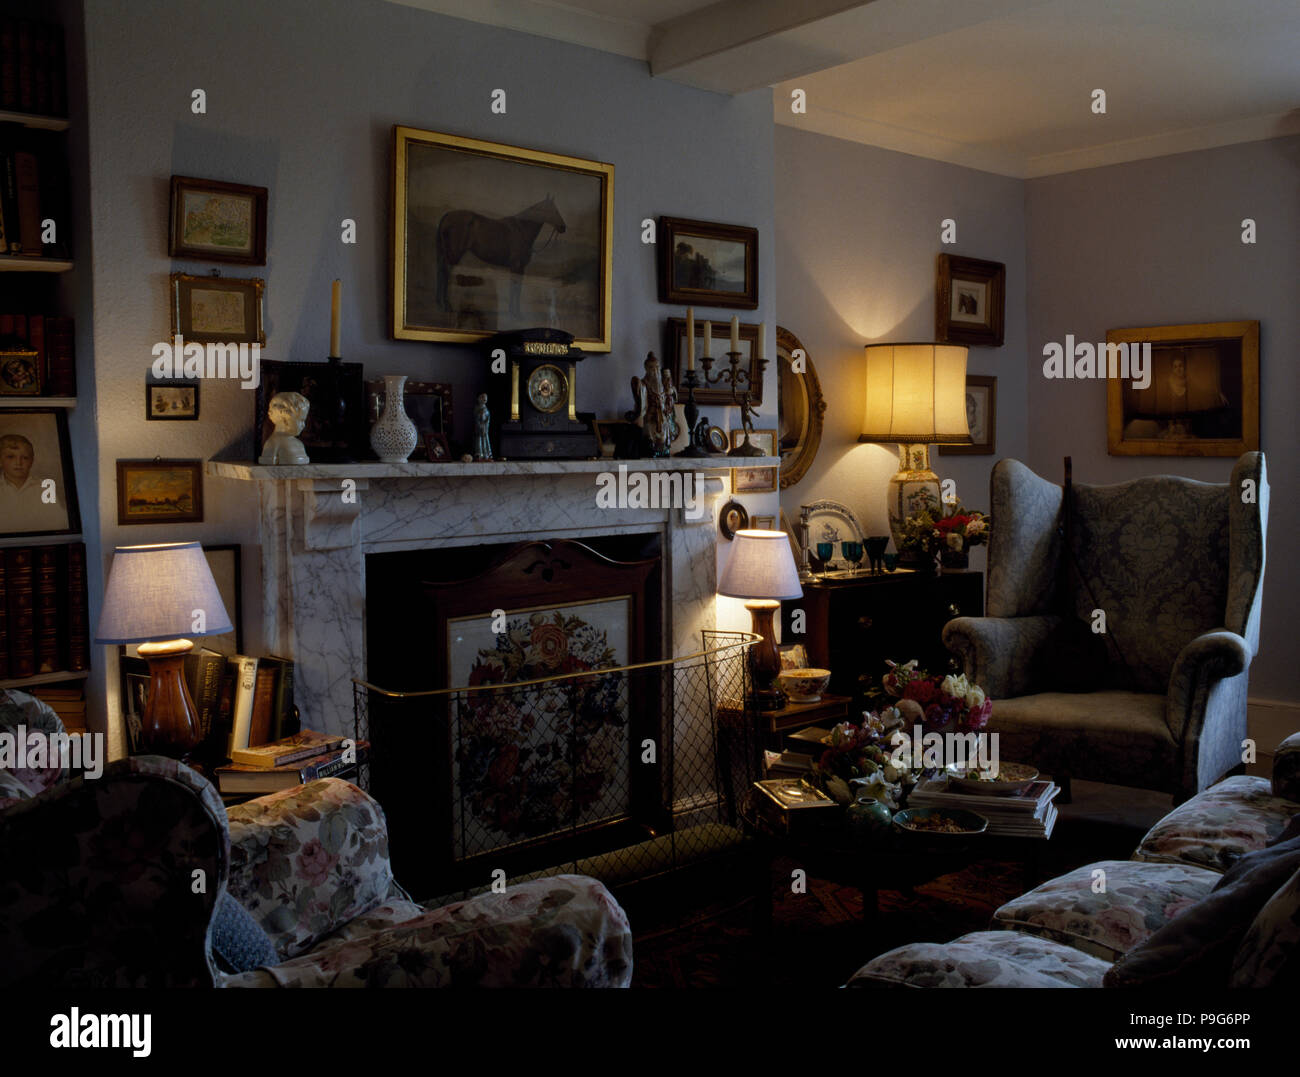 Les lampes allumées et cheminée en marbre avec coupe-feu en métal années 80 salon confortable Banque D'Images